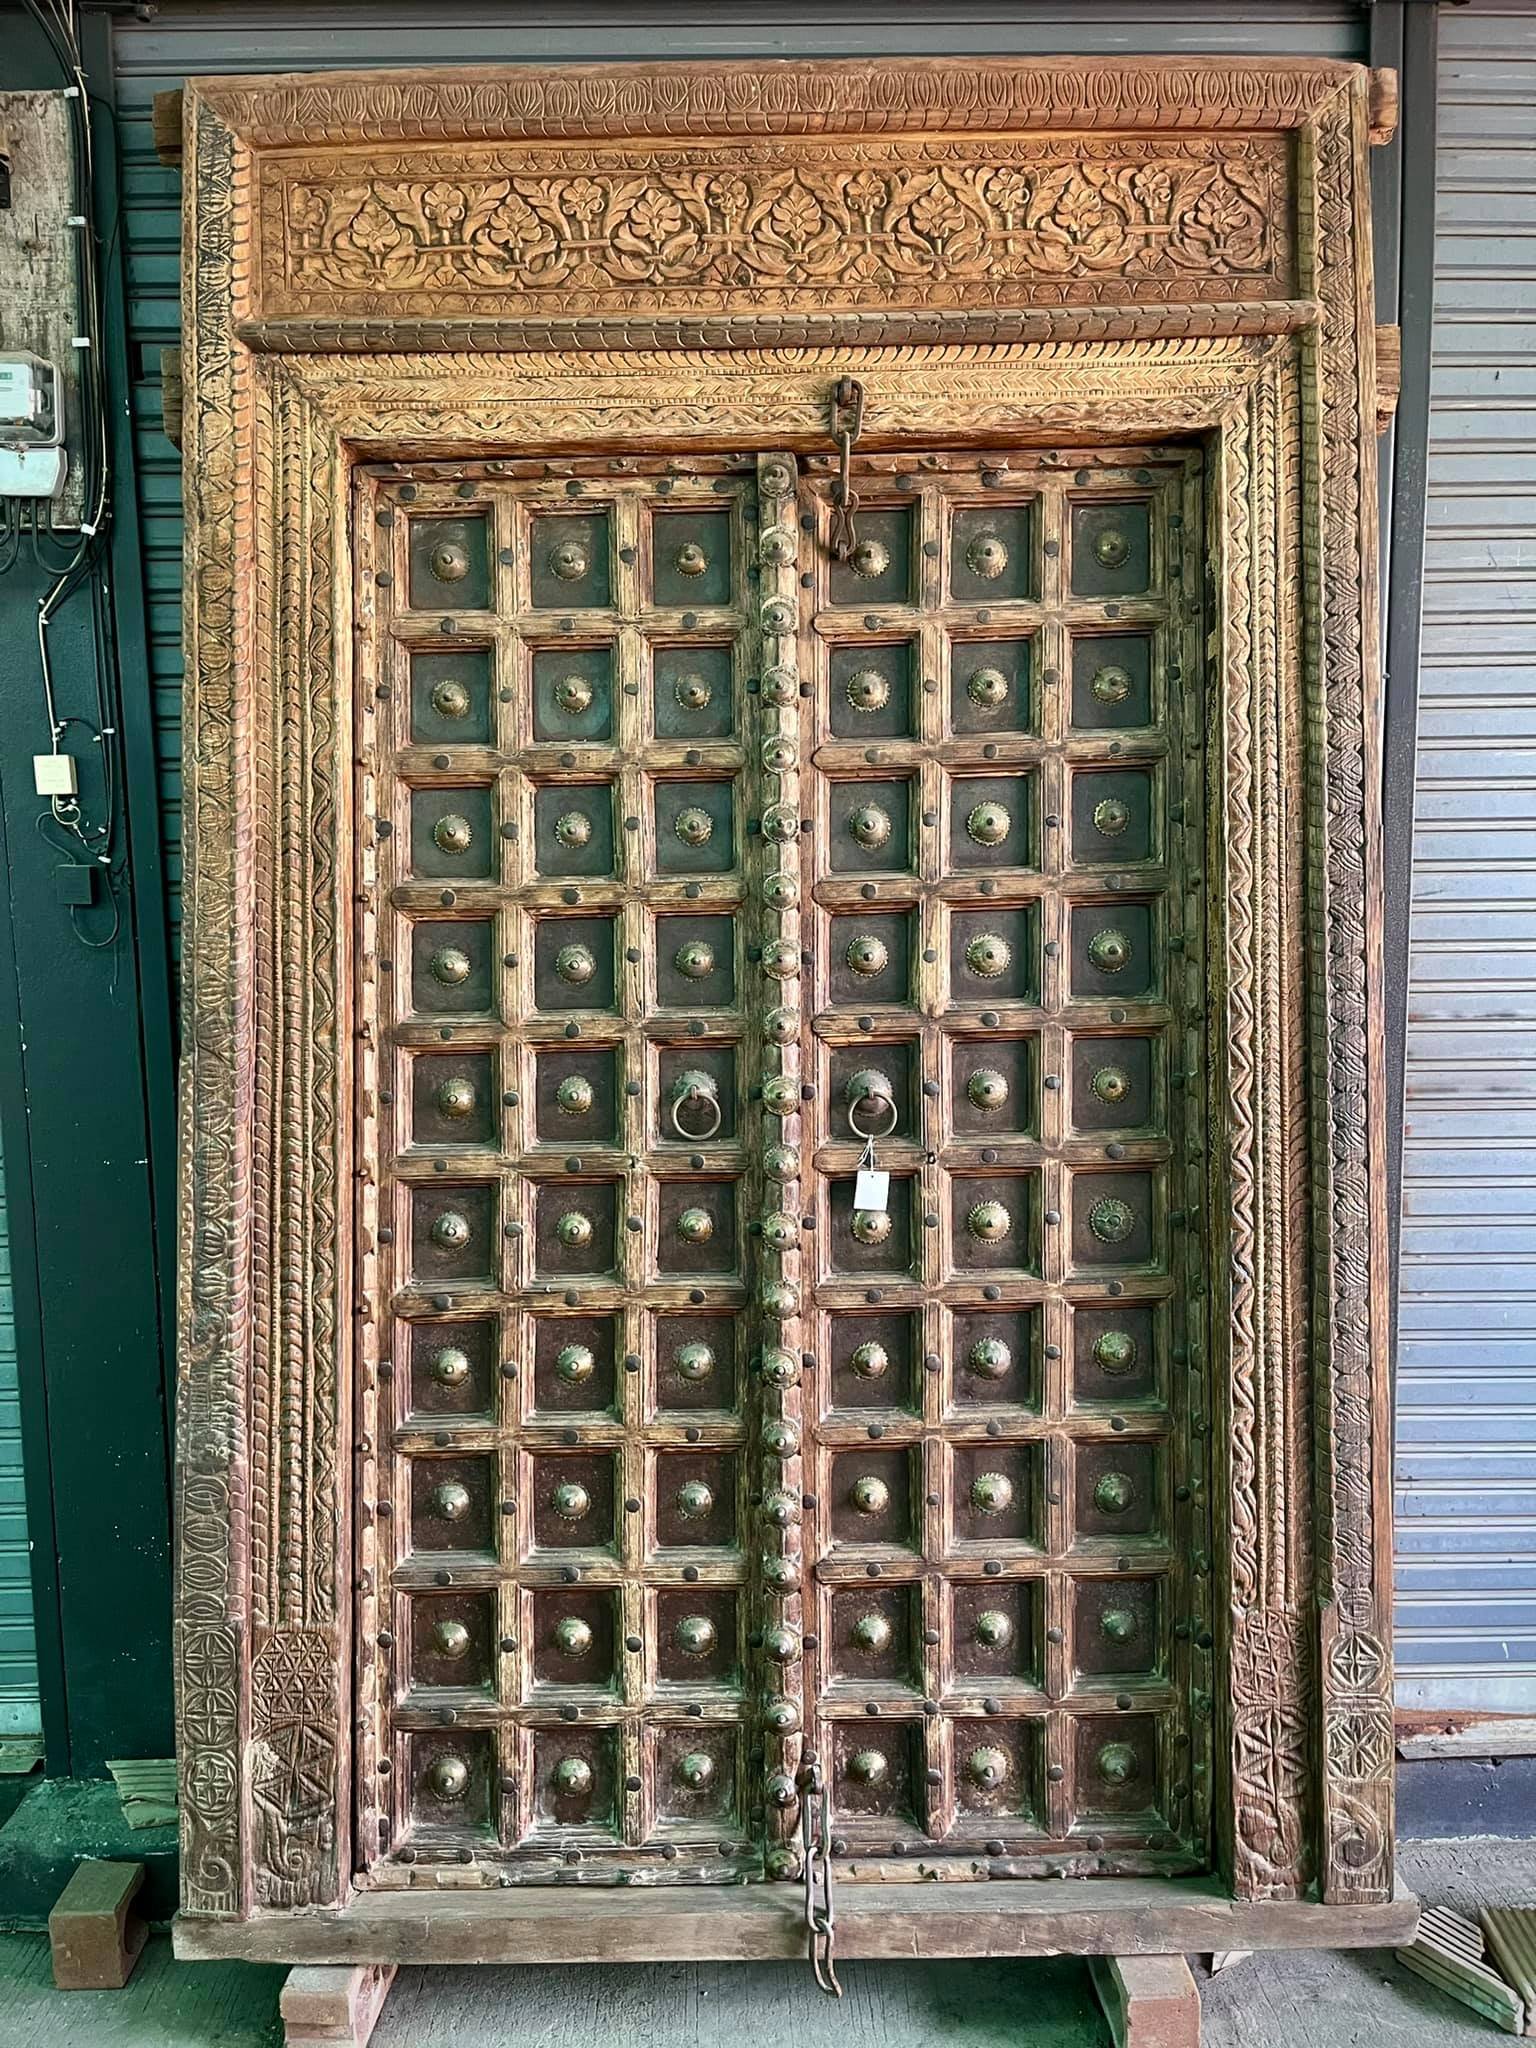 ประตูไม้เก่าโบราณบานใหญ่แต่งทองเหลืองเต็มบาน